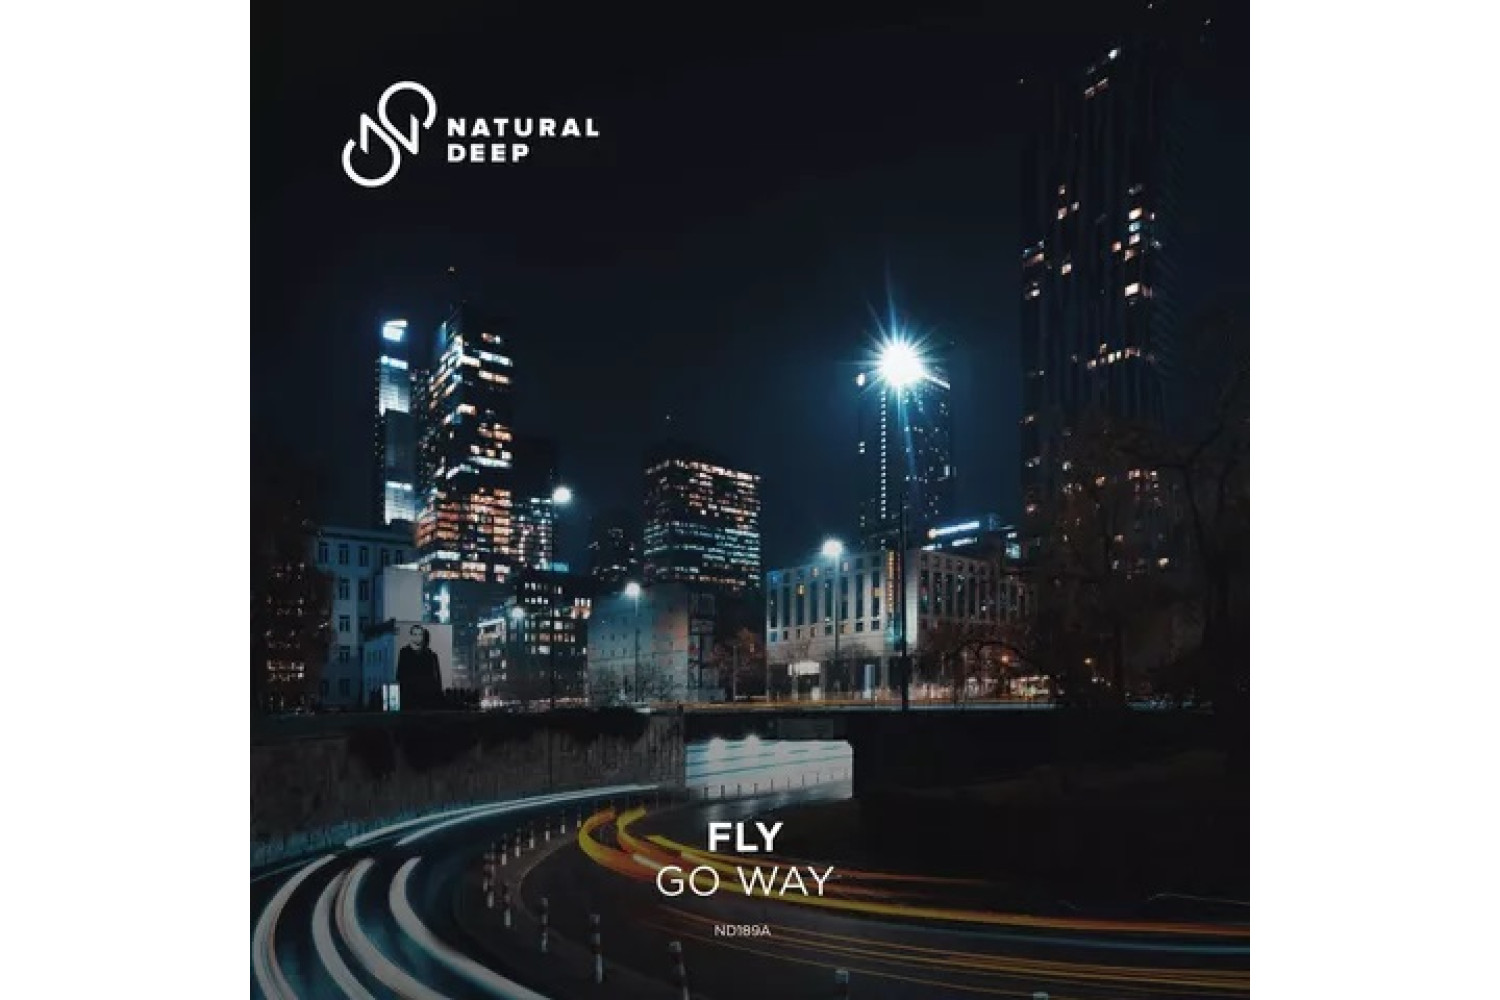 Fly - Go Way